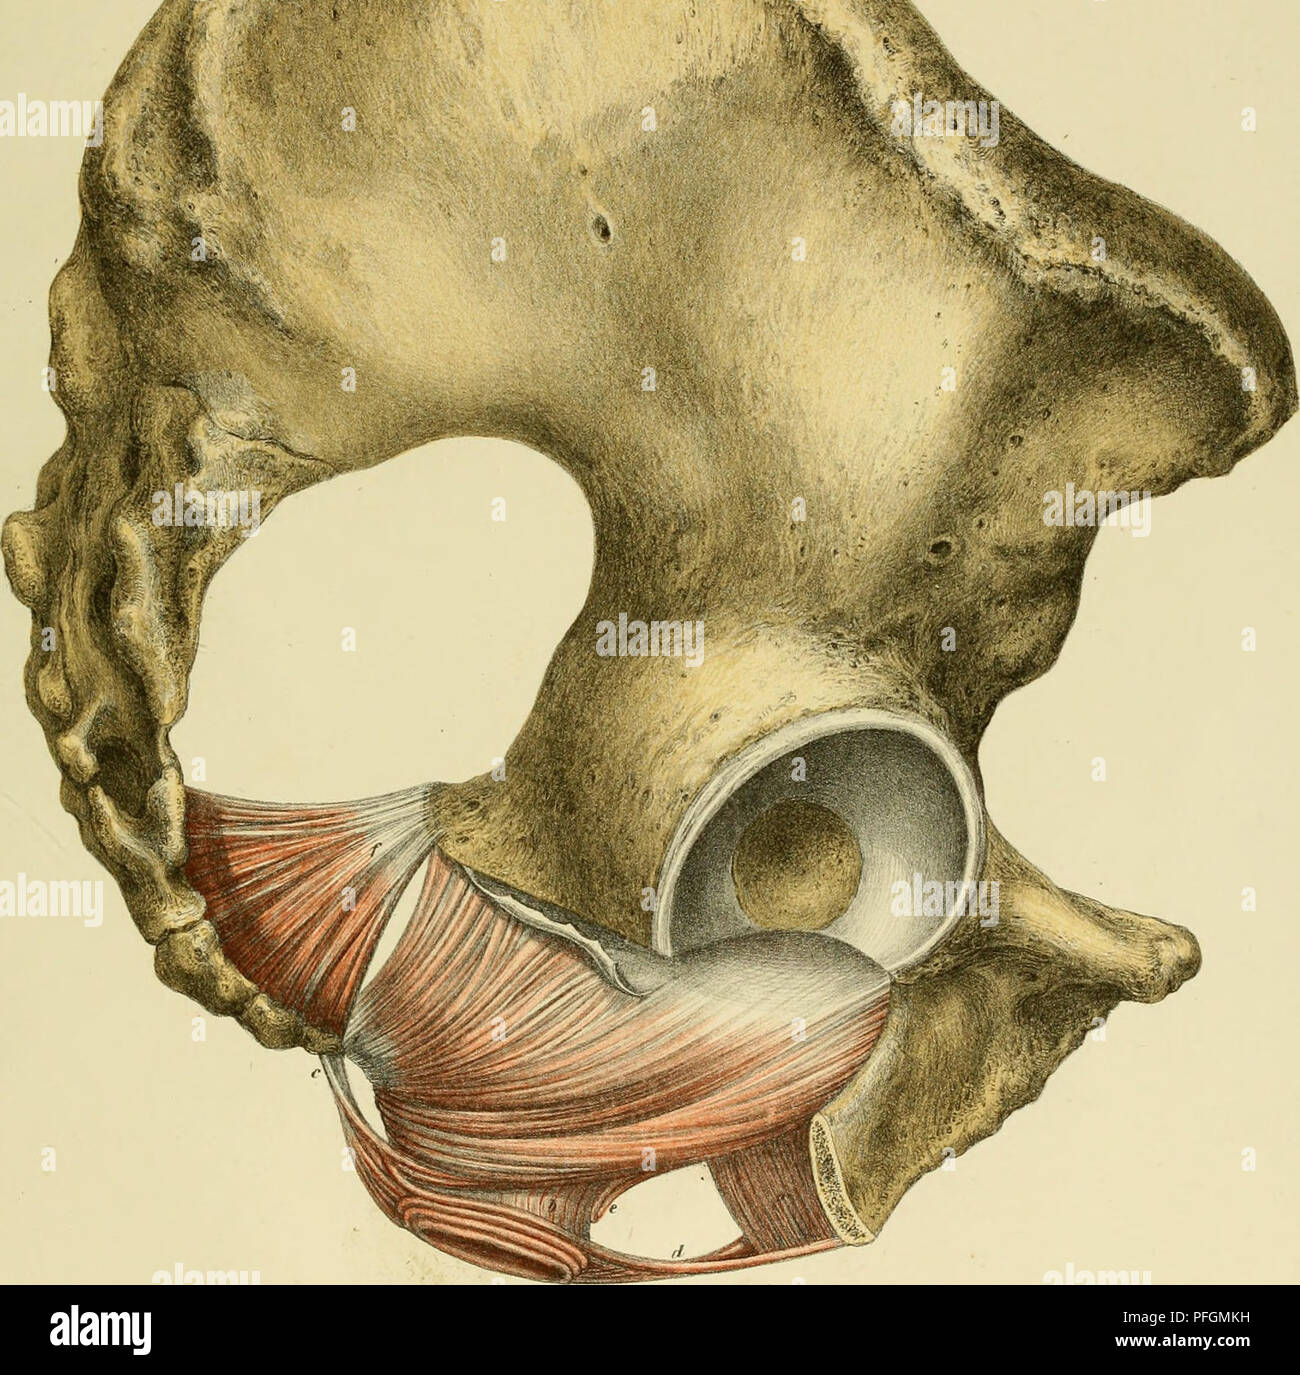 1 2 Sagittalschnitt des menschlichen männlichen Pelvis Hoden 